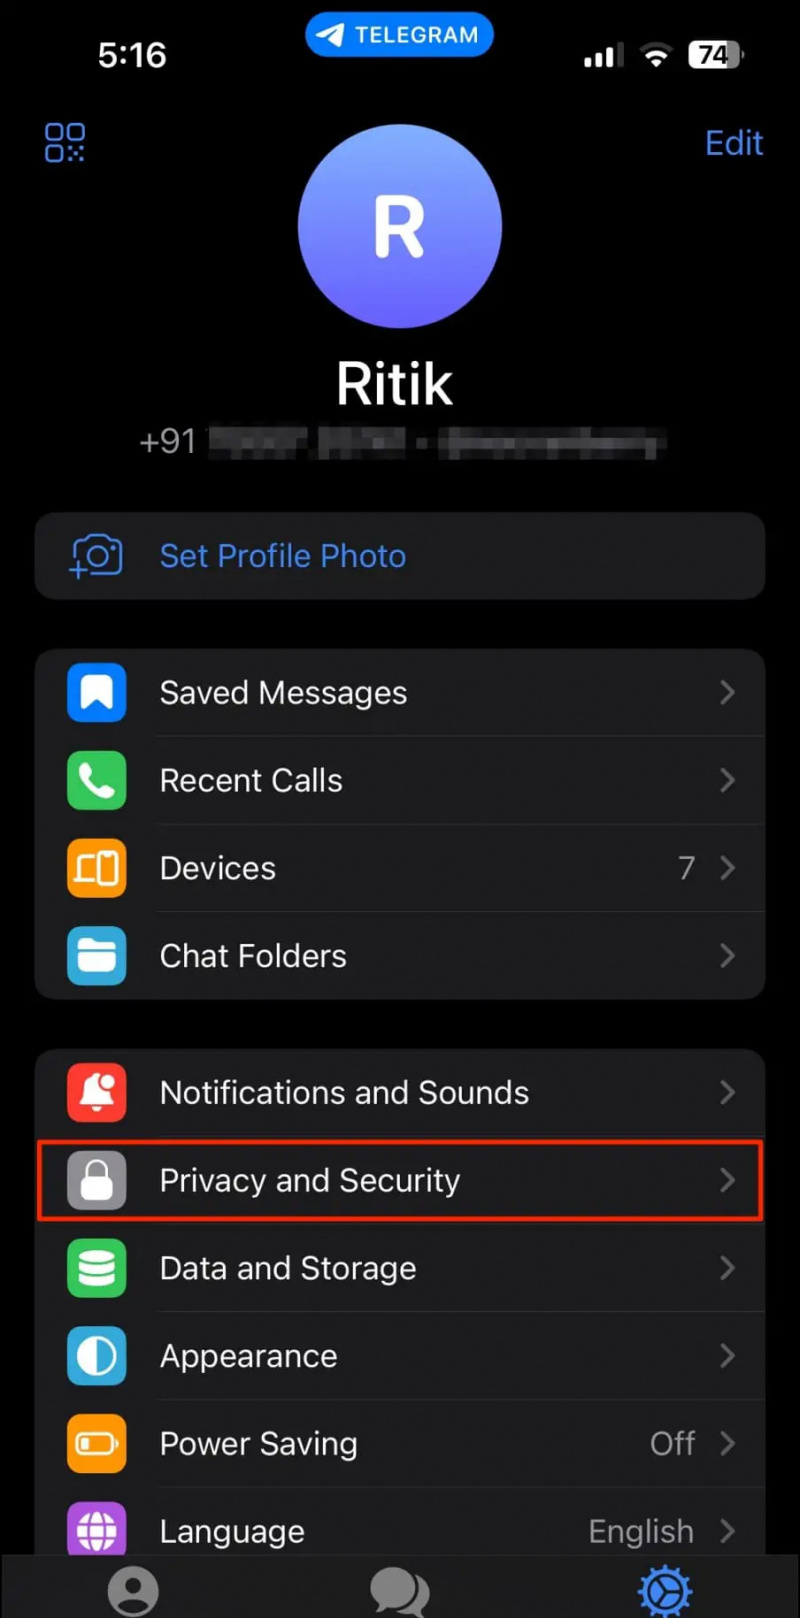   Kunci Apl Telegram pada iPhone